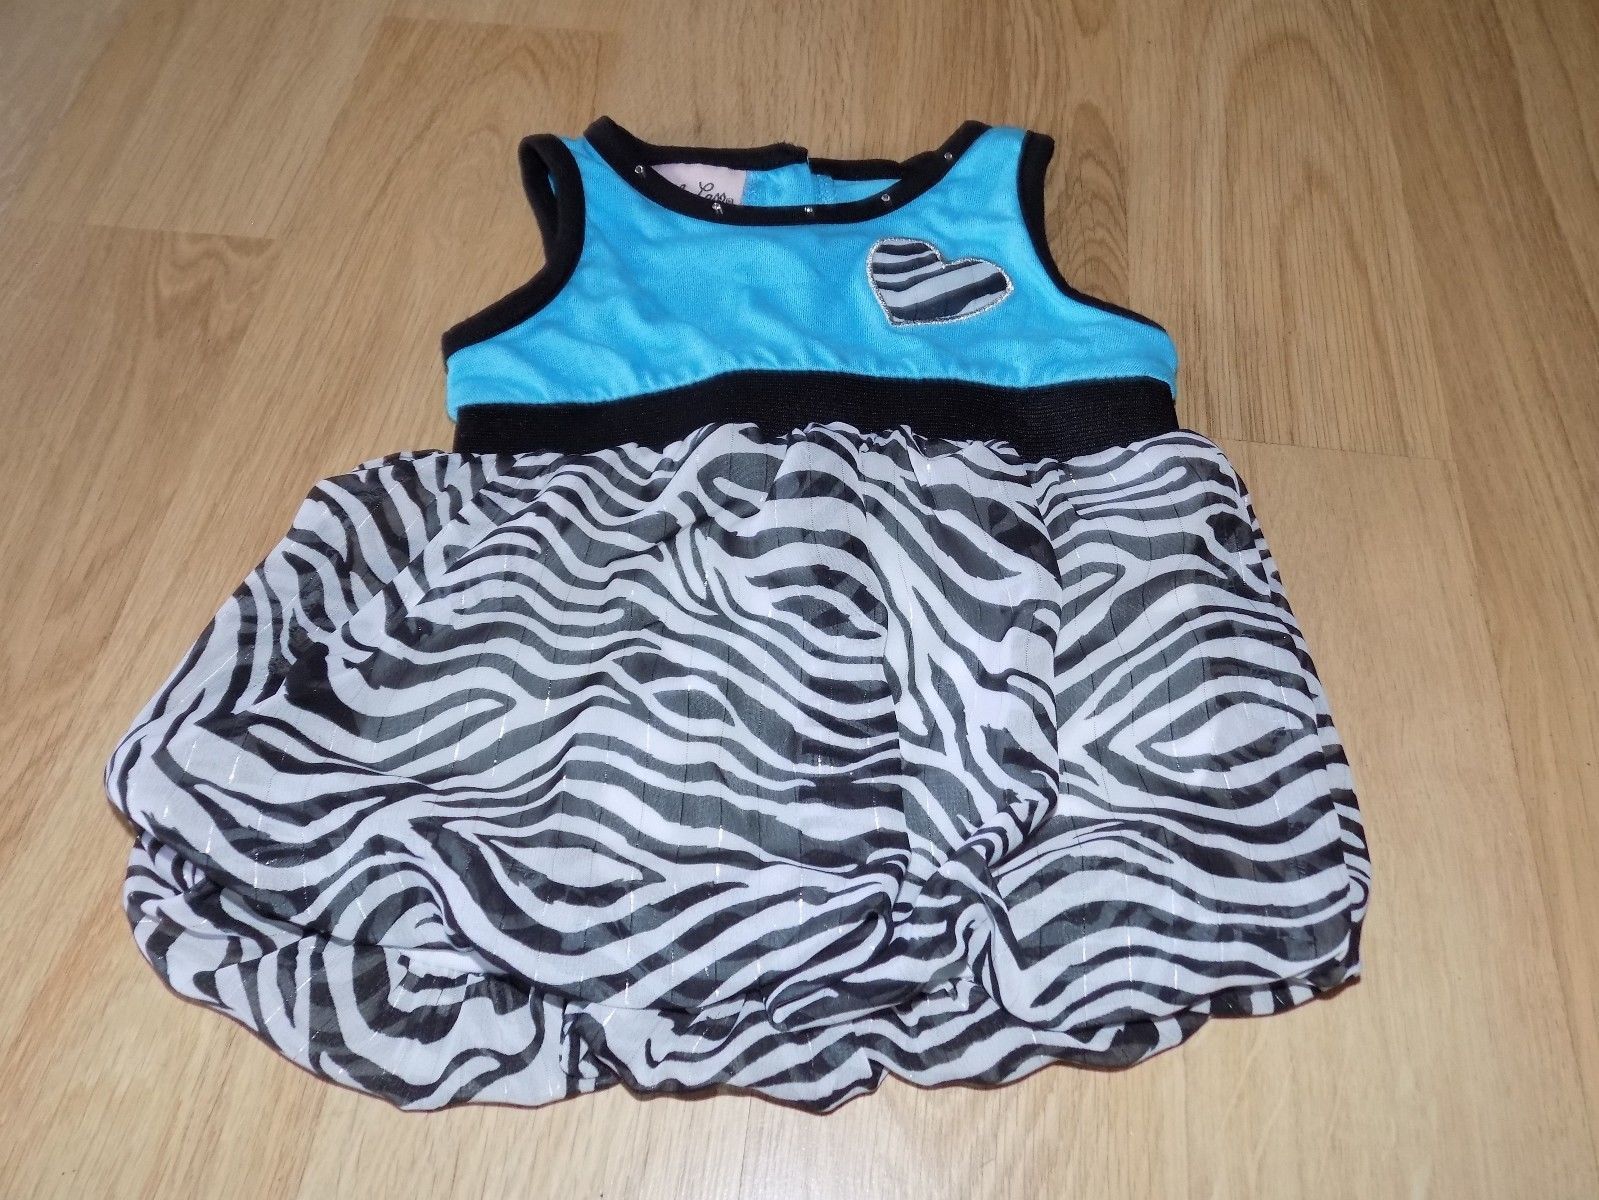 Infant Size 24 Months Little Lass Bubble Hem Tunic Dress Turquoise Zebra Print - $14.00